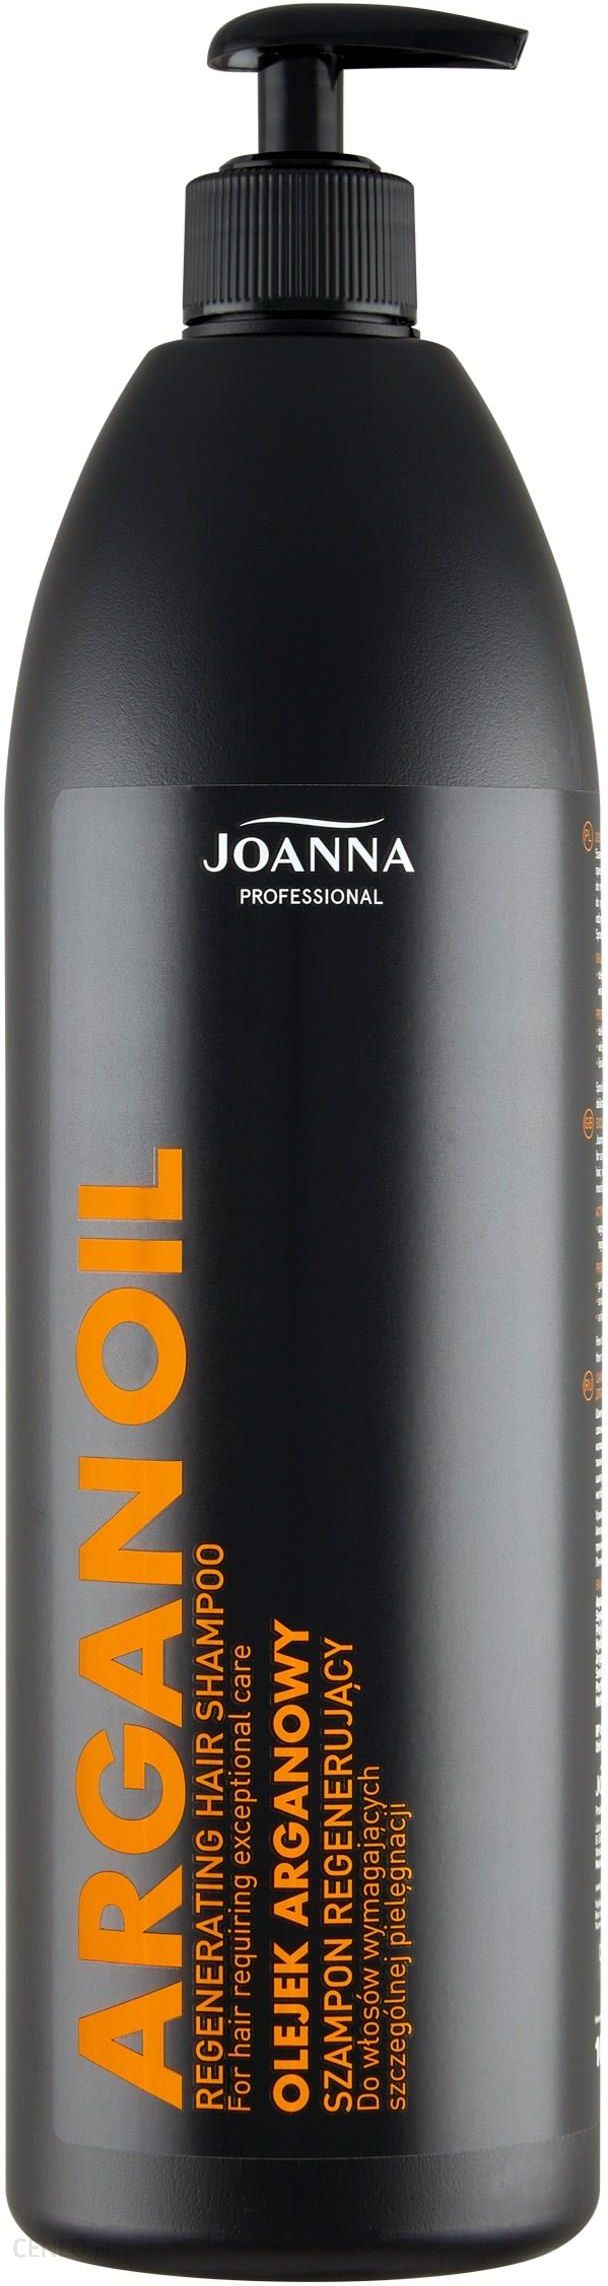 joanna professional szampon z olejkiem arganowym opinie